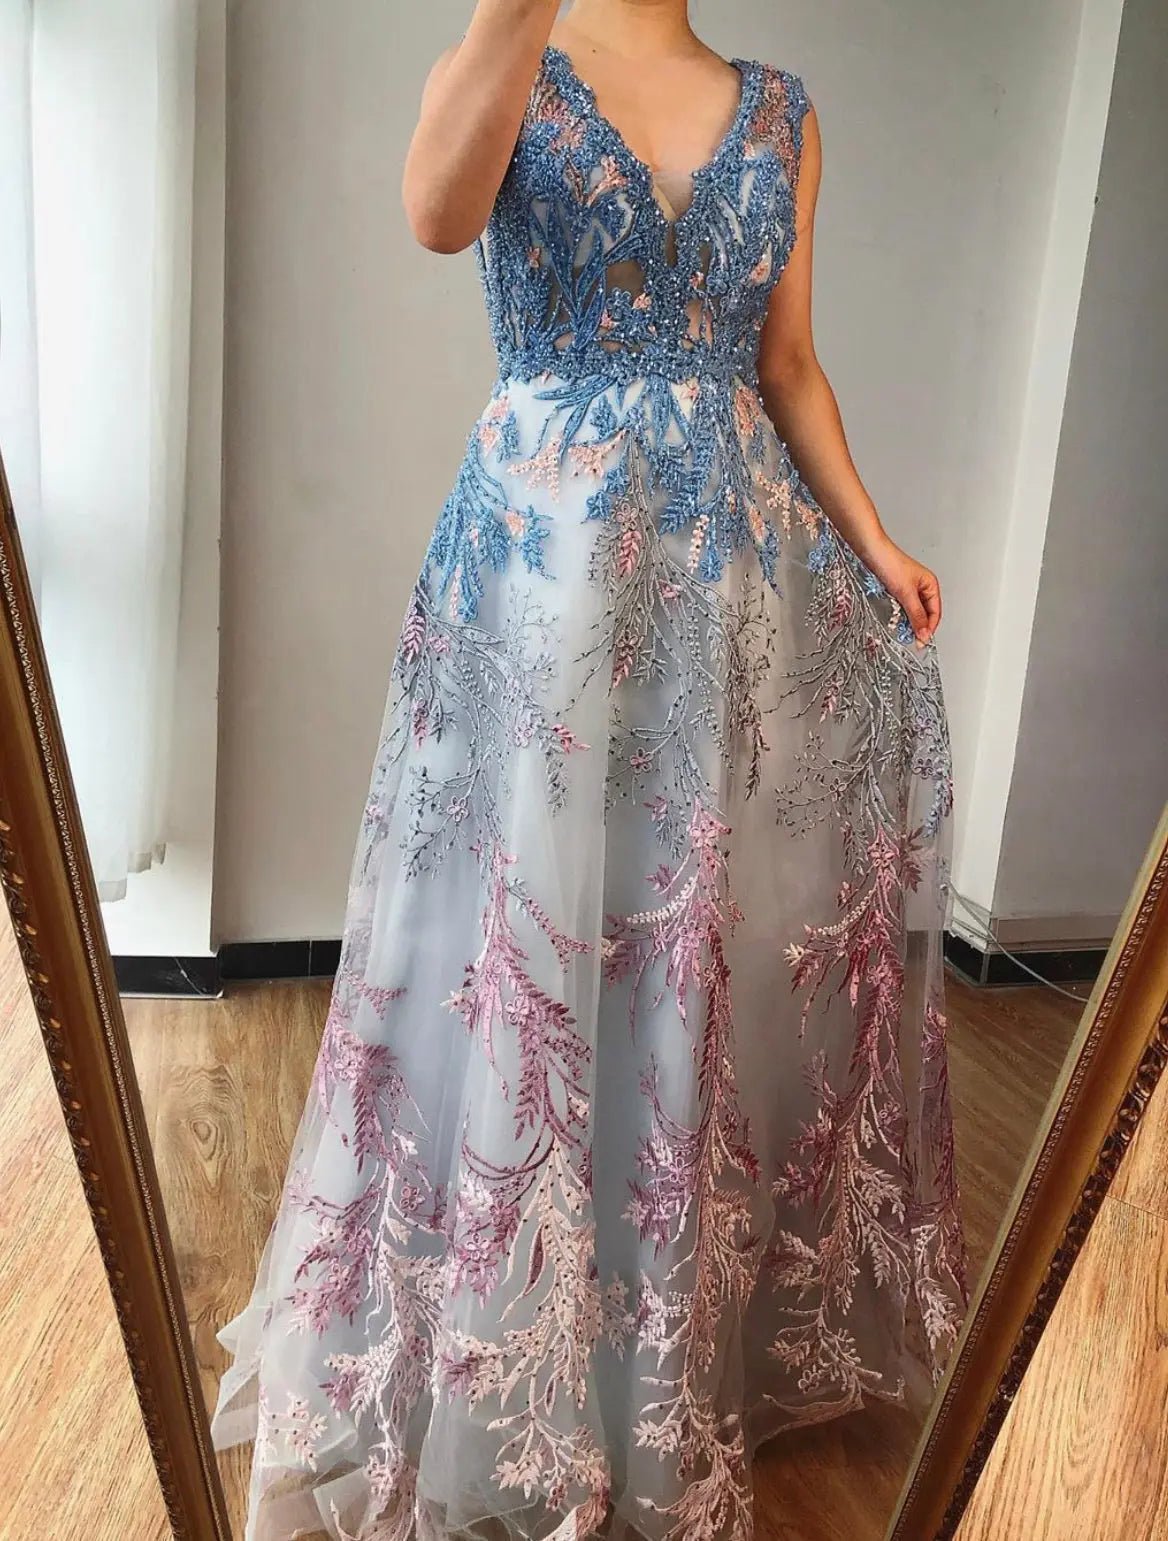 Genevieve Beading Lace Sleeveless Prom Dress - Mscooco.co.uk